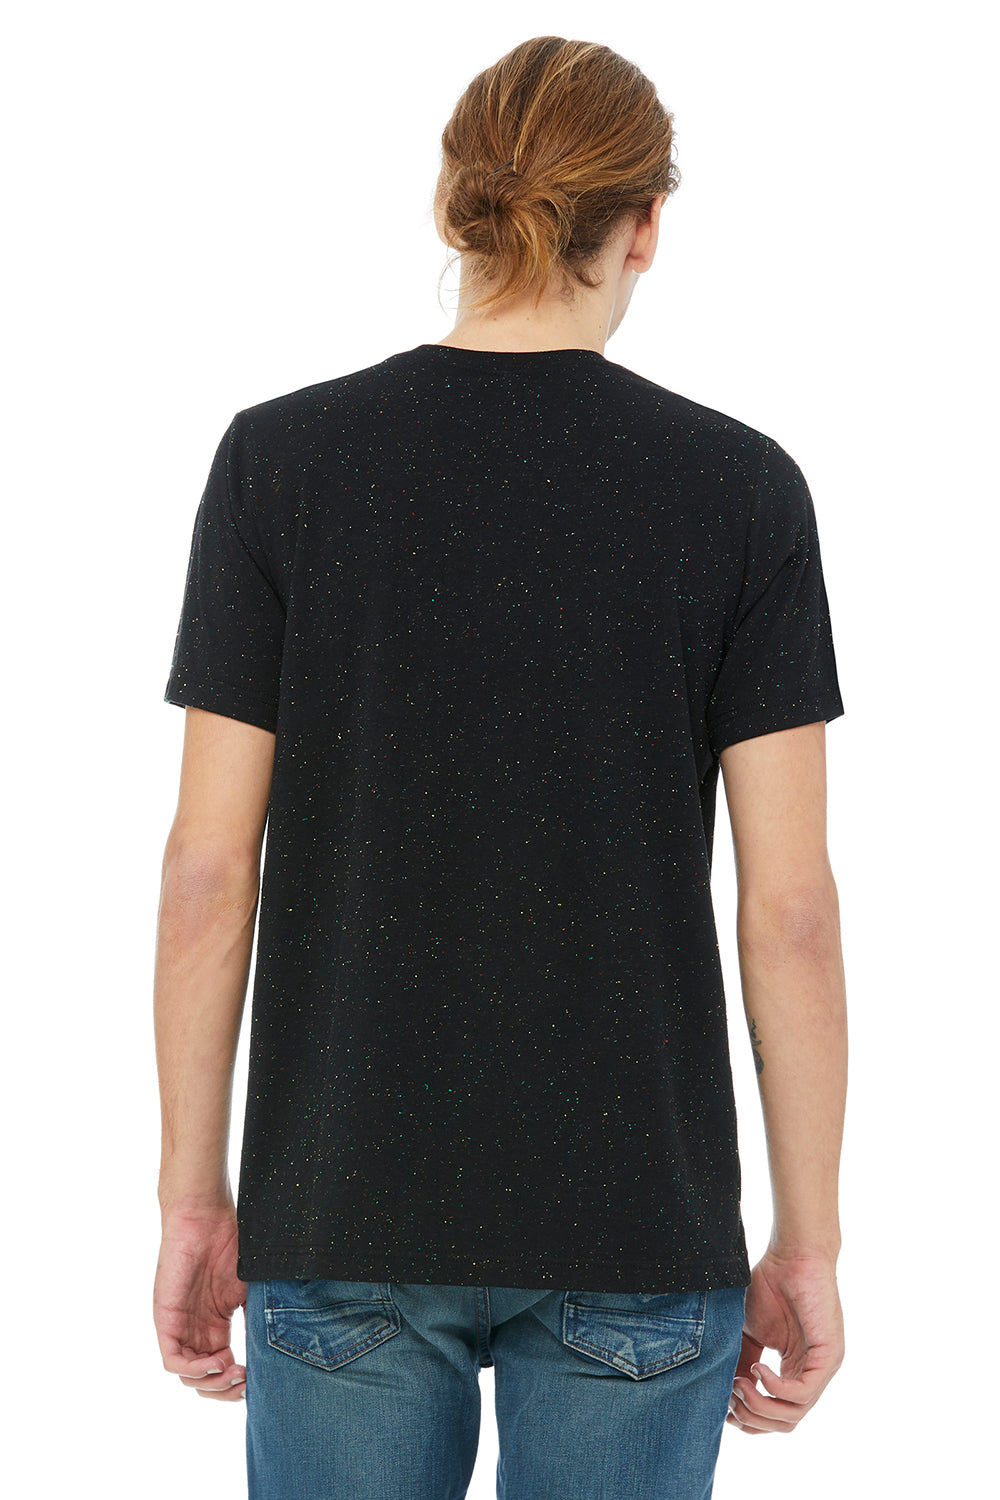 Bella + Canvas 3650 Mens Short Sleeve Crewneck T-Shirt Black Speckled Back